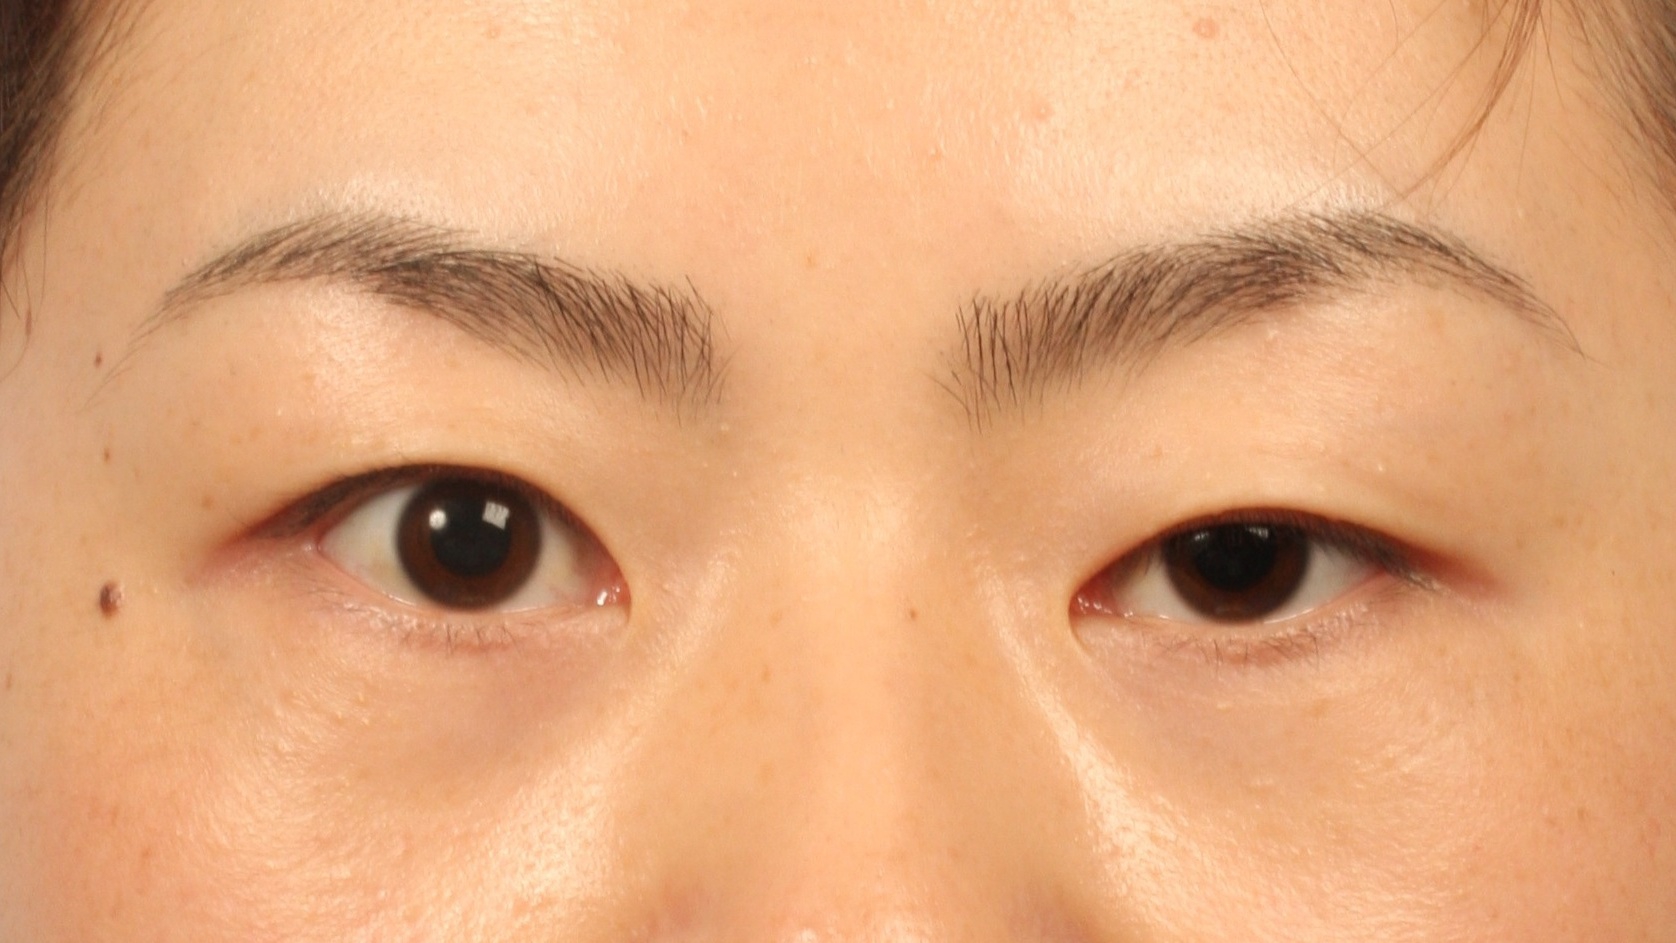  Mắt 2 mí thành 1 mí : Nguyên nhân và cách điều trị hiệu quả